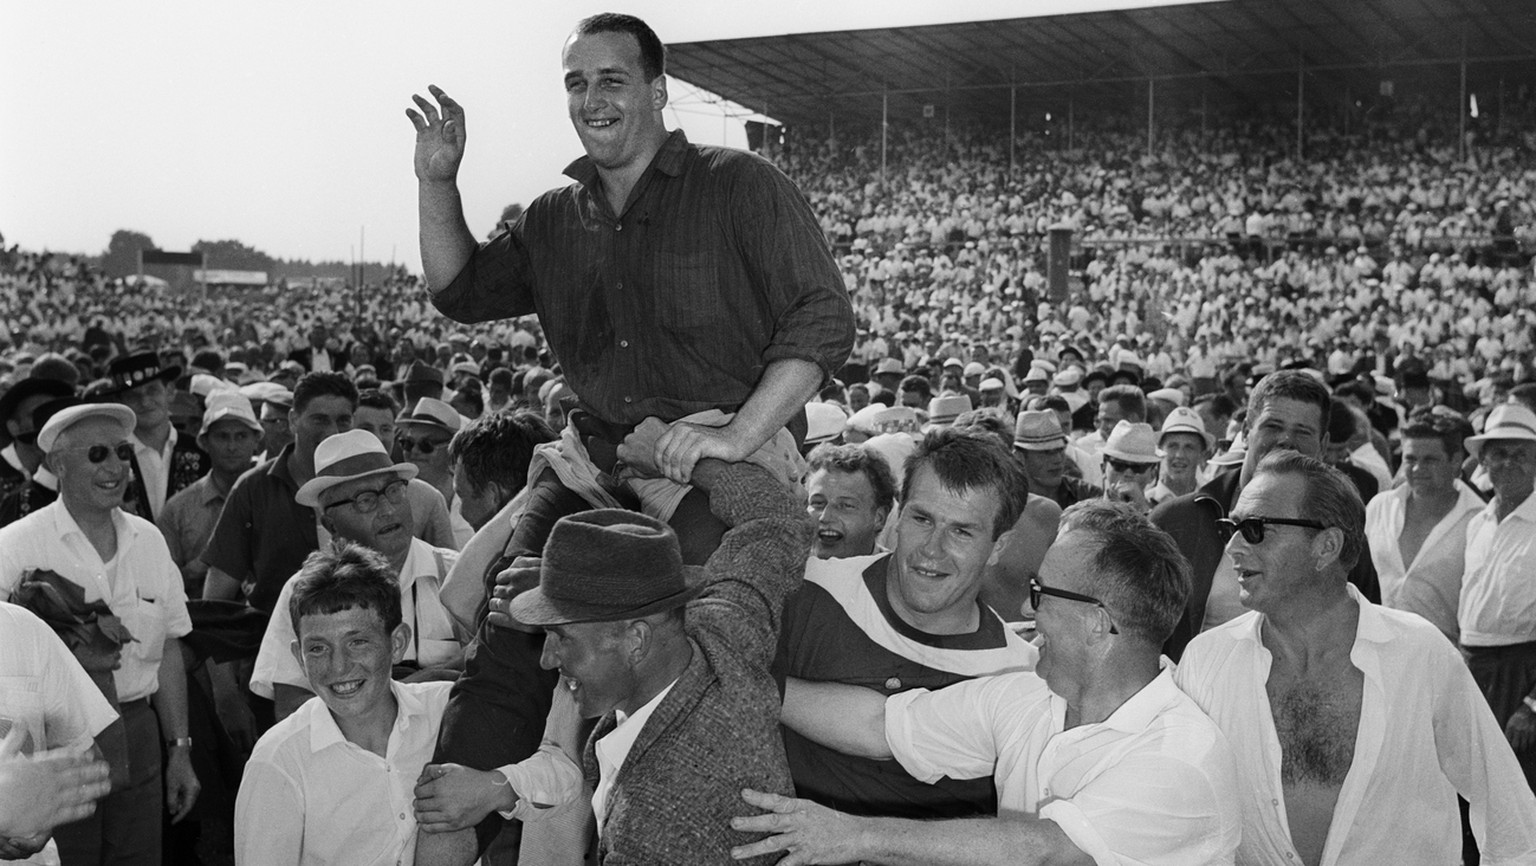 Der Schwingerkoenig Rudolf Hunsperger, Sieger beim 27. Eidgenoessischen Schwing- und Aelplerfest, wird im August 1966 in Frauenfeld von seinen Fans begeistert gefeiert. (KEYSTONE/Str)